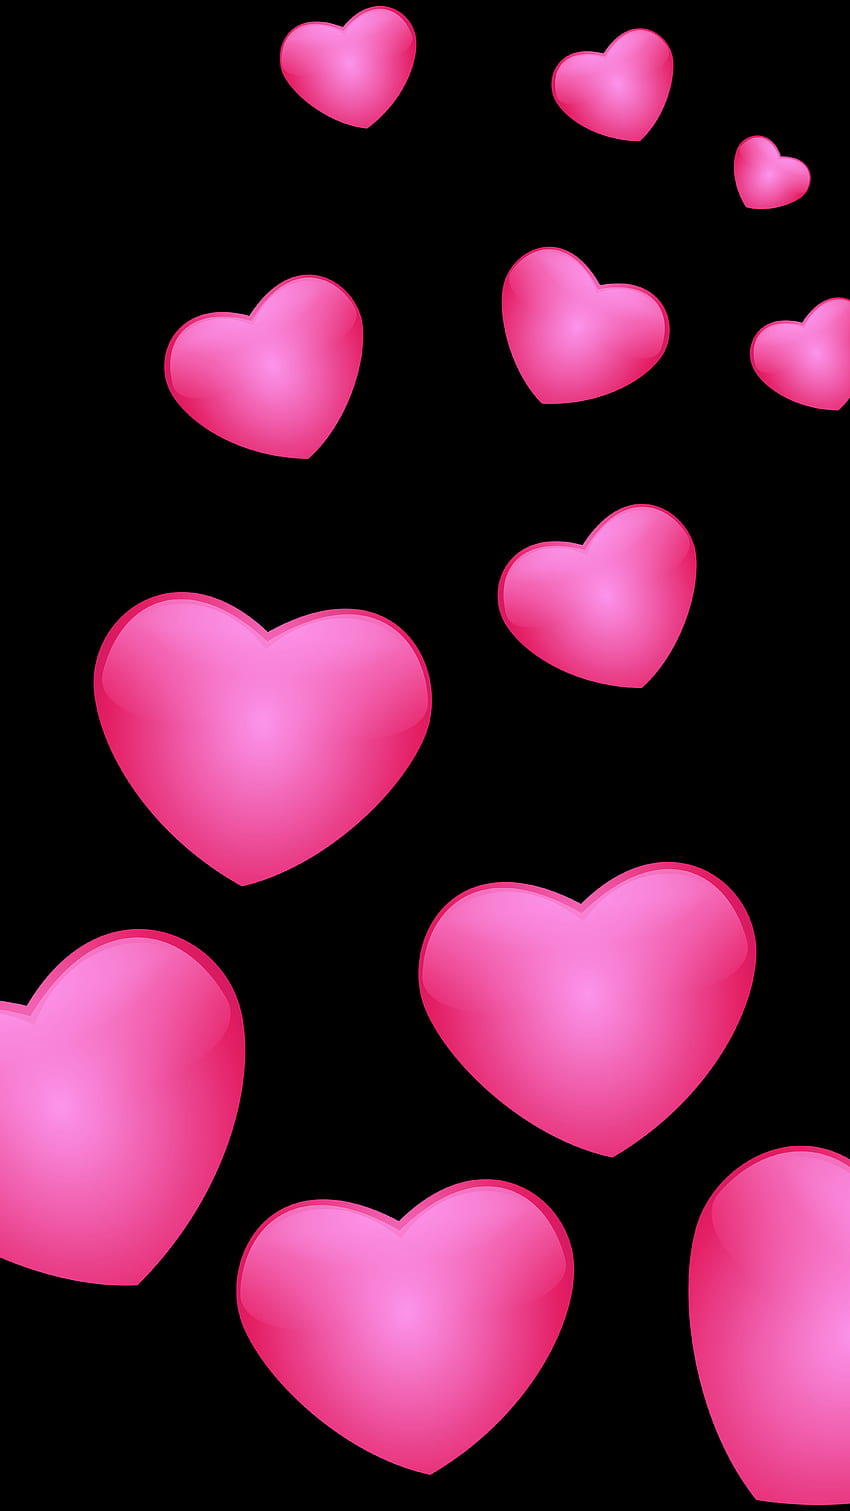 Hati Merah Muda, Hati Warna Merah Muda wallpaper ponsel HD